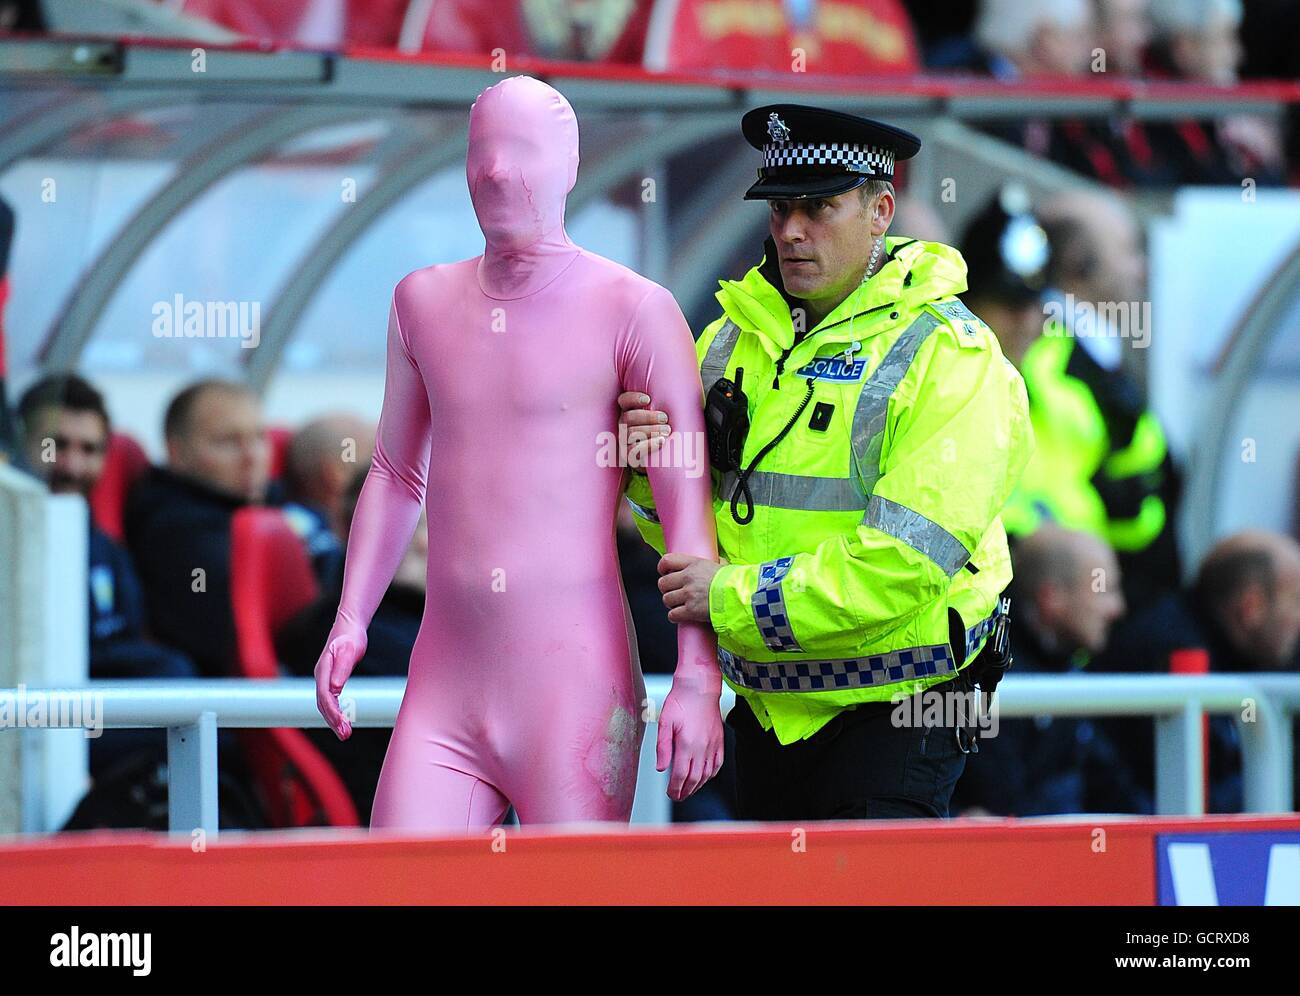 Calcio - Barclays Premier League - Sunderland / Aston Villa - Stadio di luce. Un ventilatore vestito in un calzino rosa del corpo è scortato via dalla polizia dopo aver invaso il campo Foto Stock